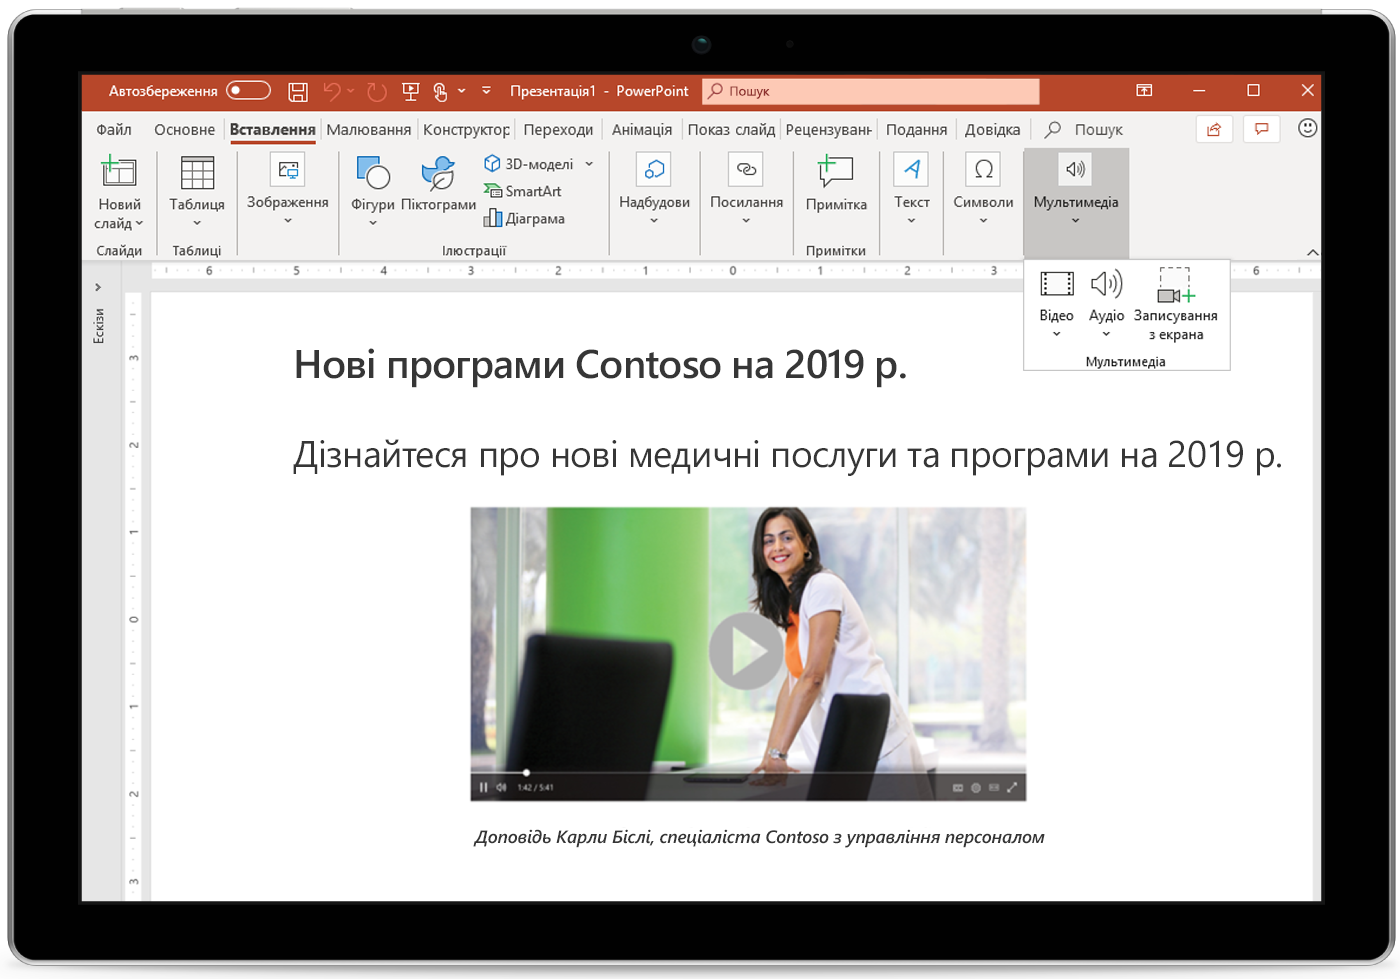 Зображення слайду презентації PowerPoint на планшеті.